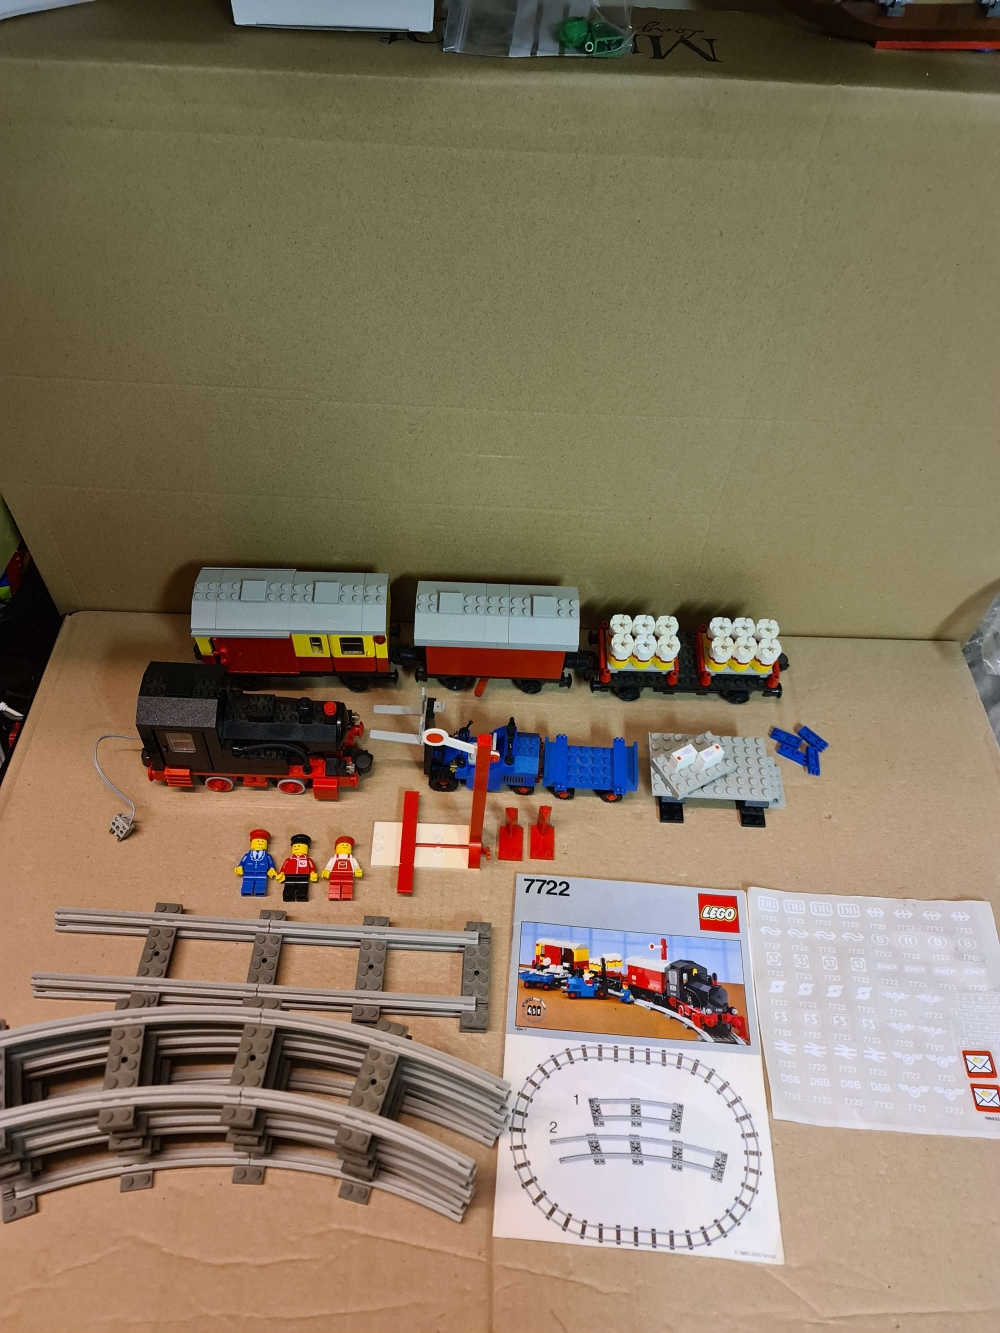 Sett 7722 fra lego Train : 4.5v serien.
Settet er 100 % komplett. Flott sett.
Testet og fungerer. Ingen lekkasje I batterivogn. 

